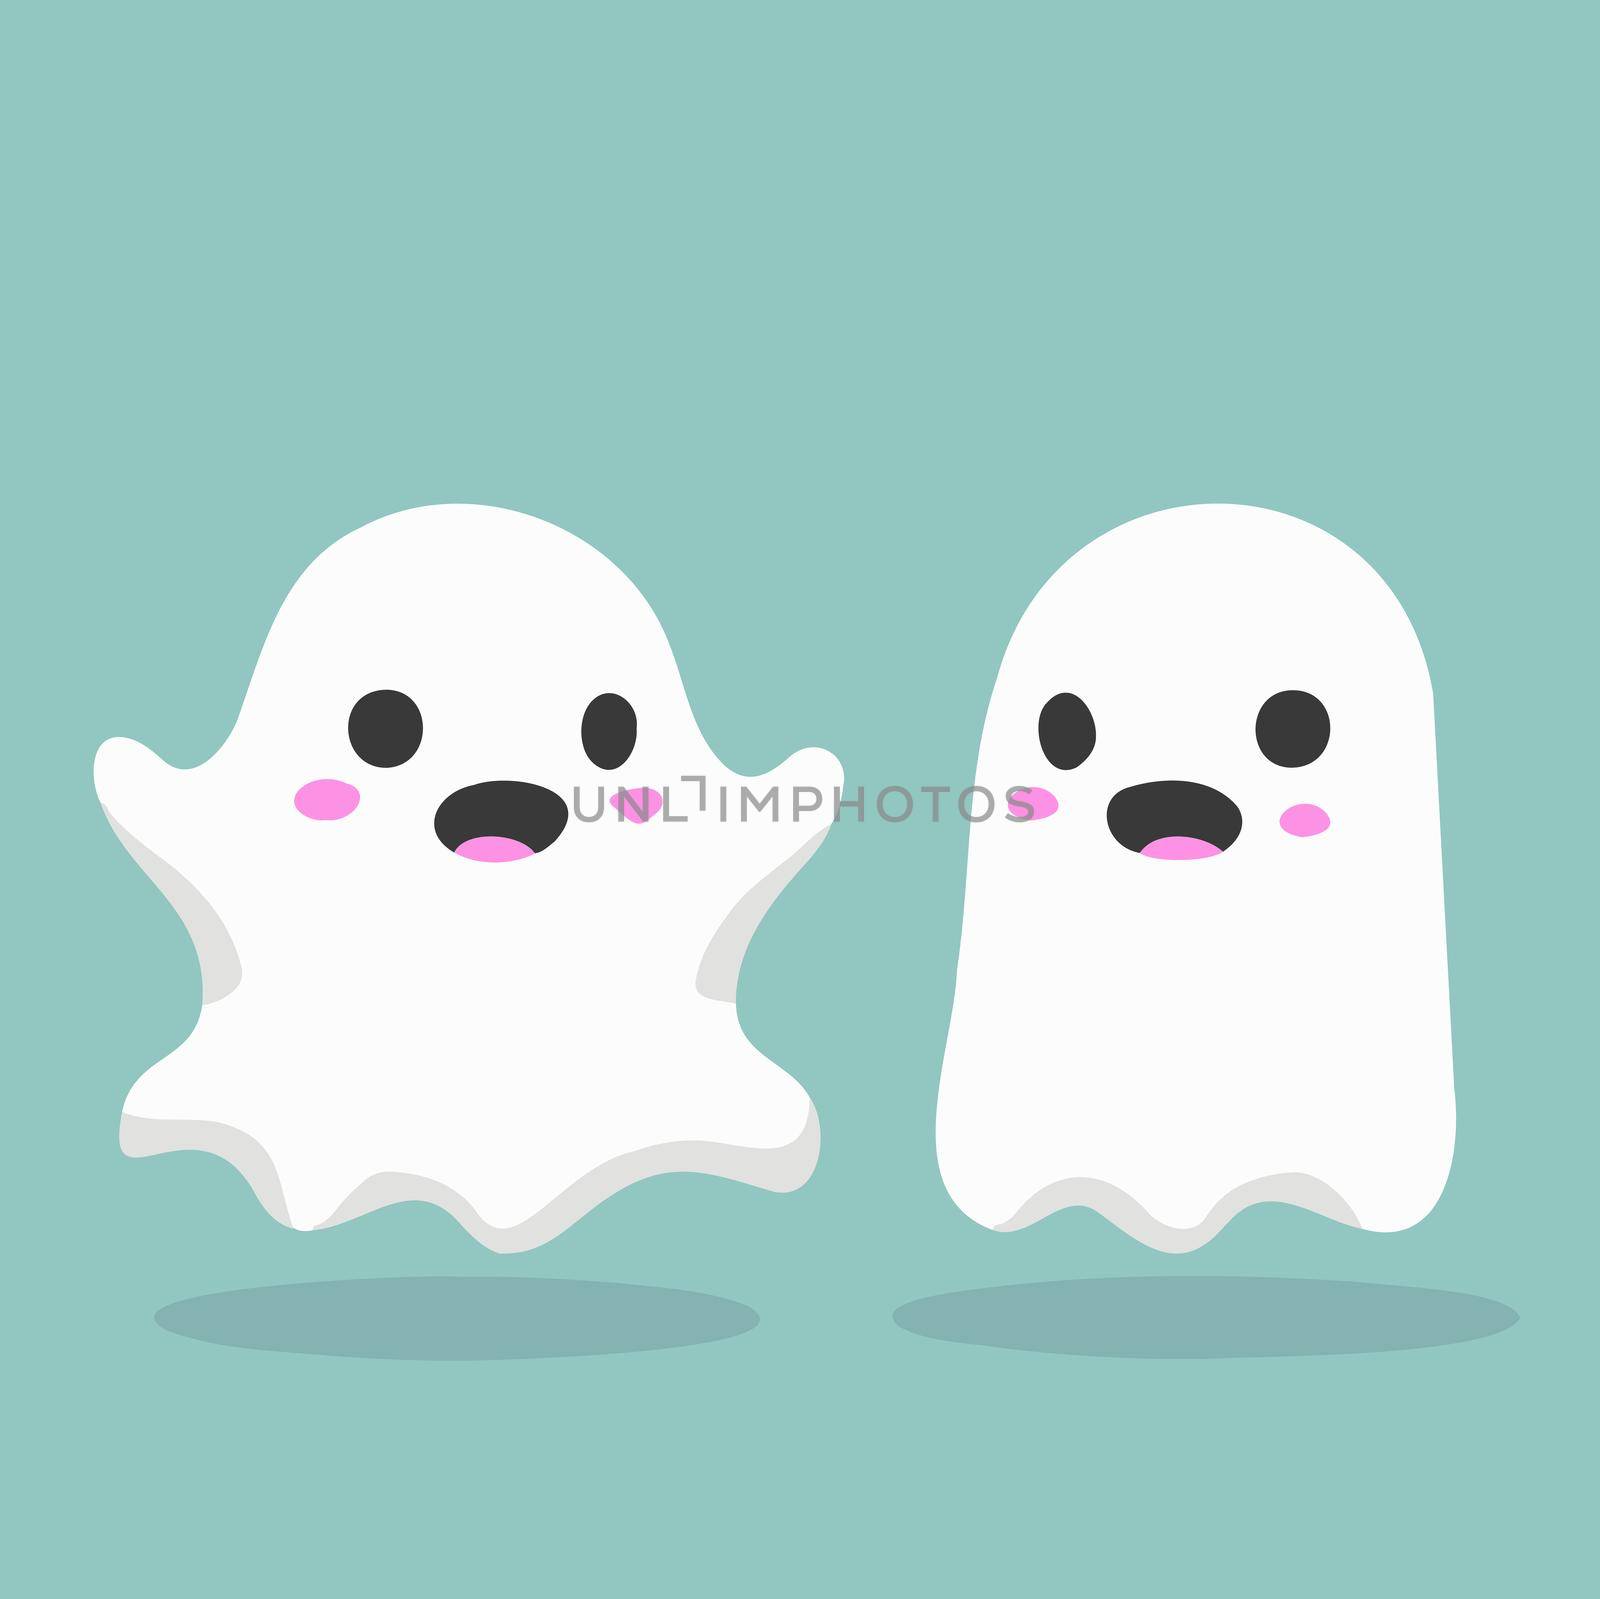 cute halloween ghost illustration. halloween illustration.